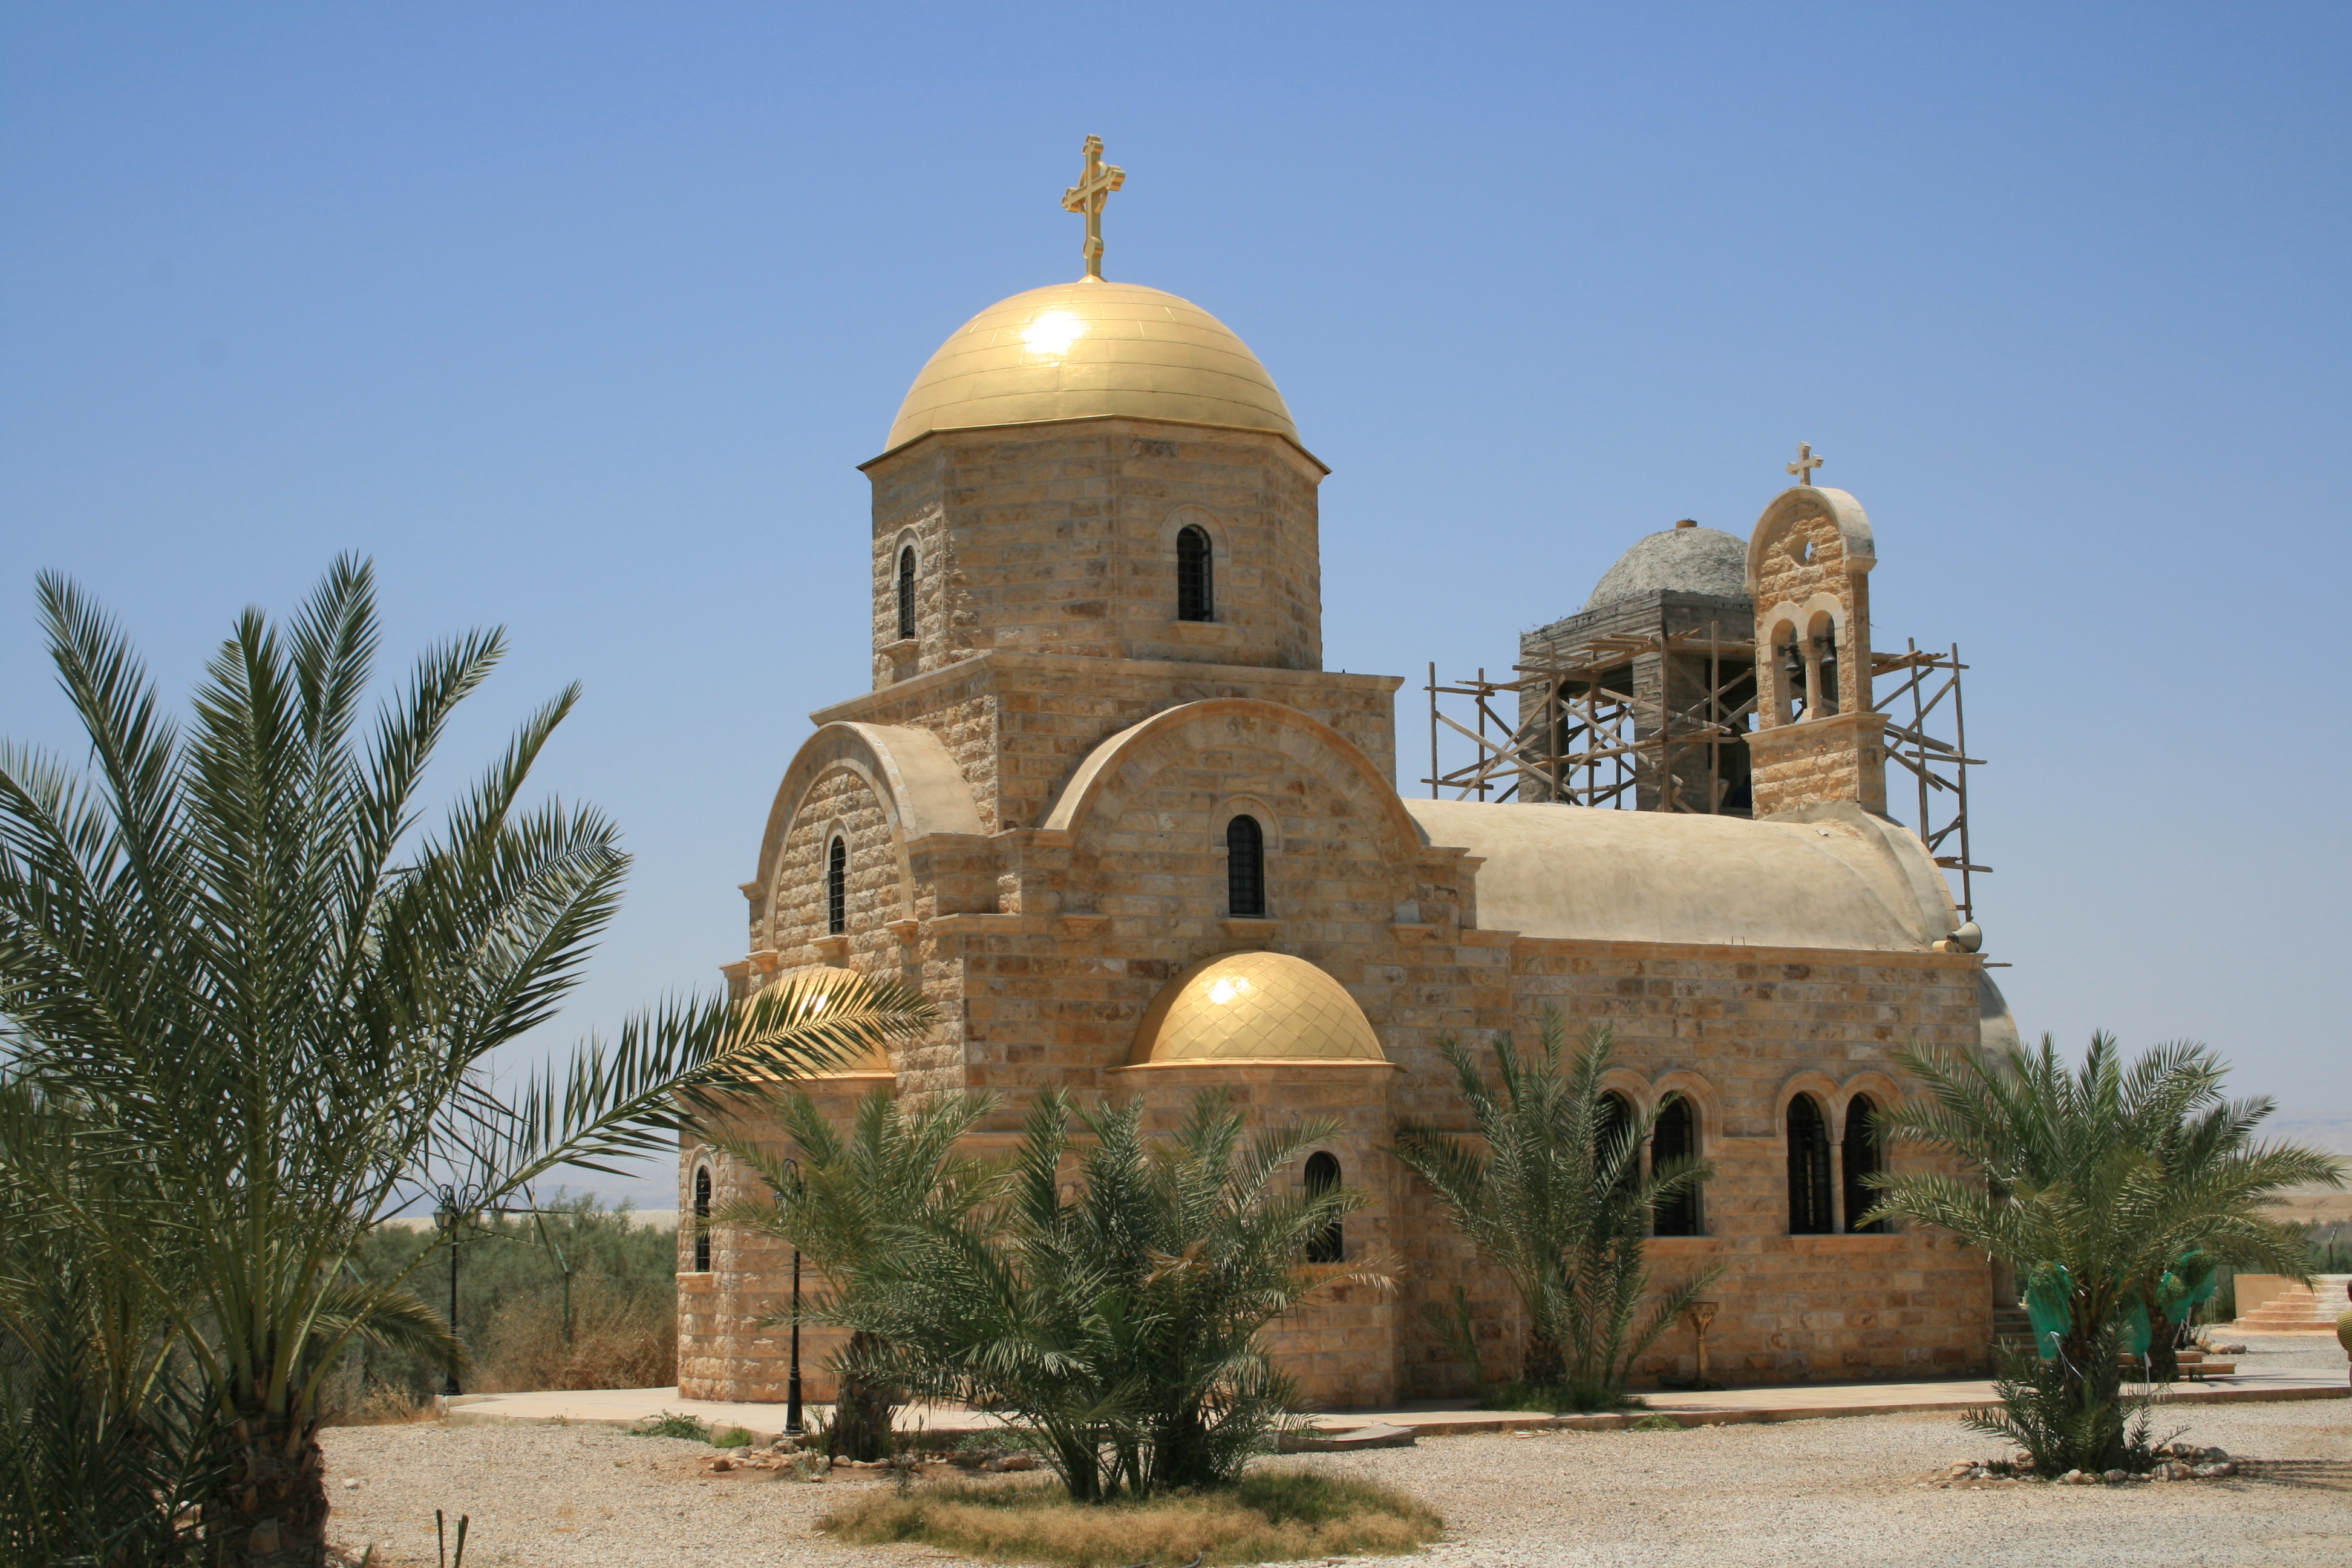 Dead Sea - Baptism site - Amman overnight